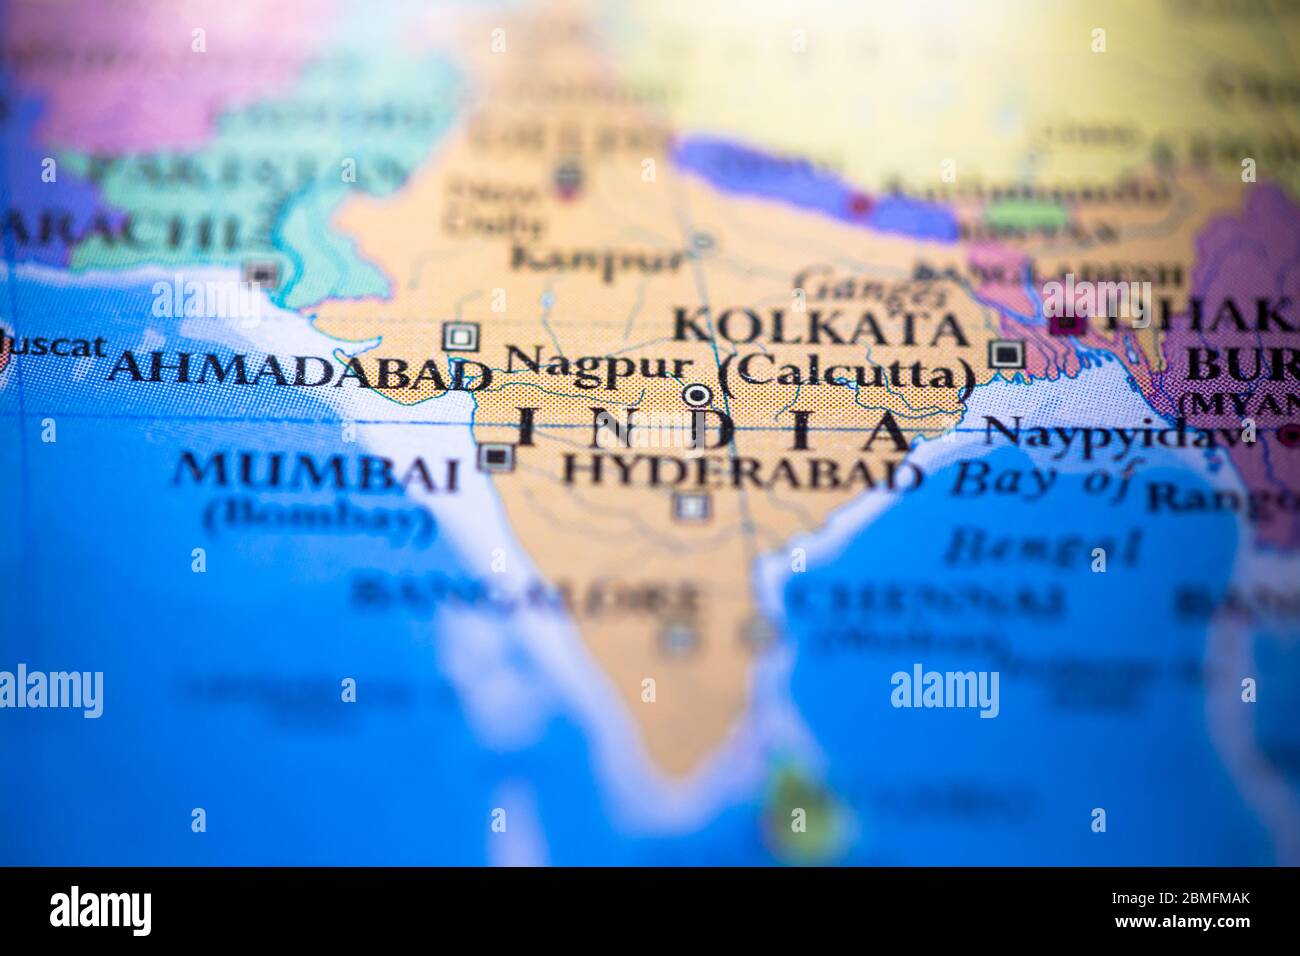 Profondità di campo poco profonda focalizzazione sulla mappa geografica posizione del paese India nel continente asiatico sull'atlante Foto Stock